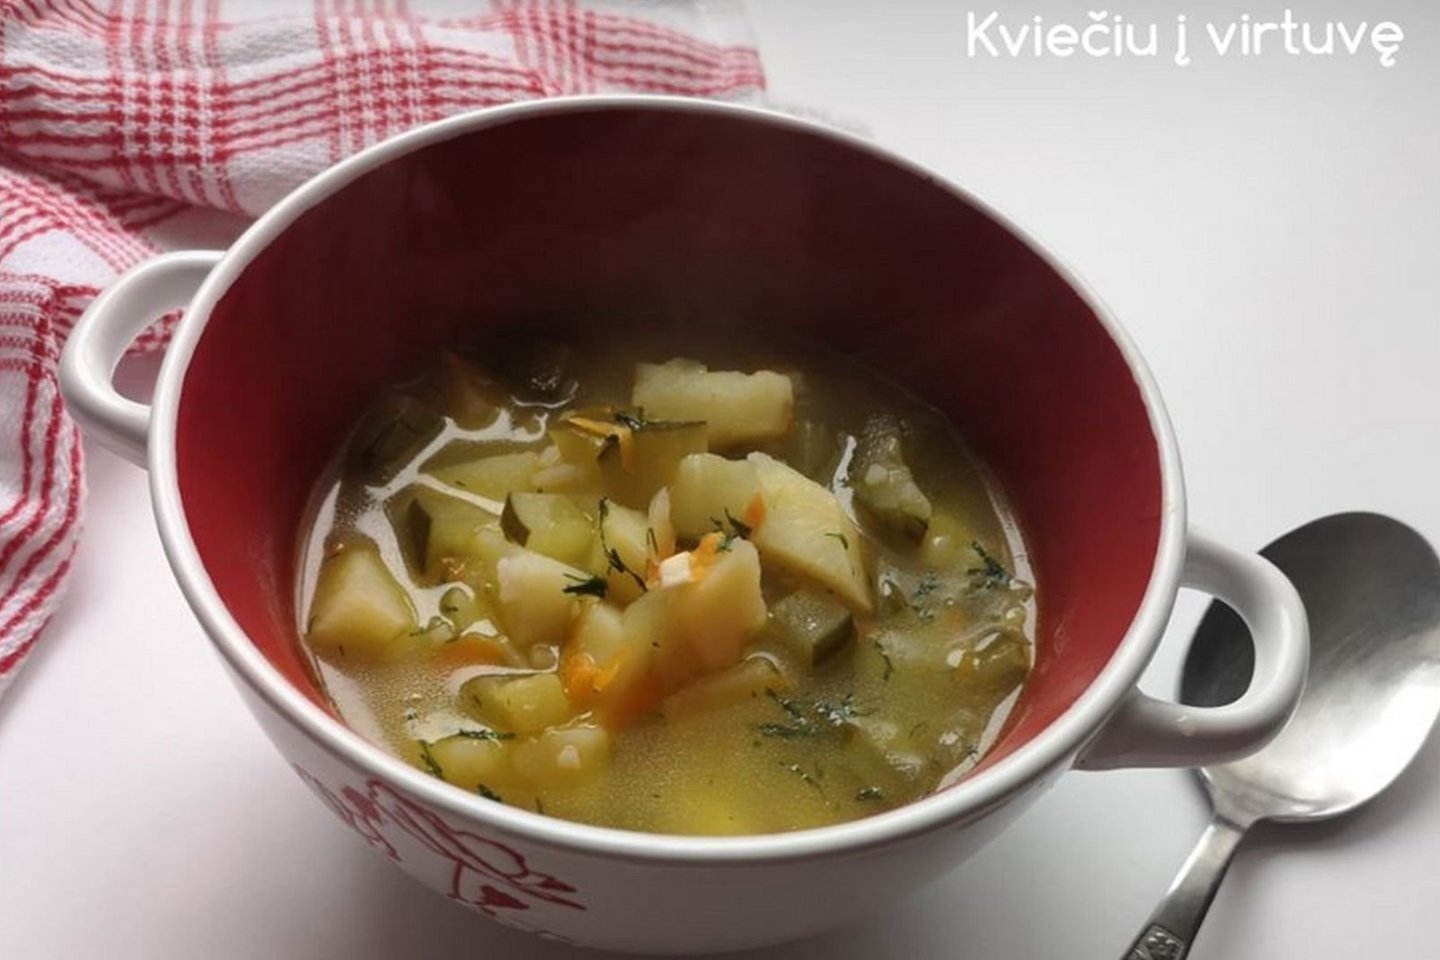 Raugintų agurkų sriuba su ryžiais.<br>Nuotr. iš „Kviečiu į virtuvę“.